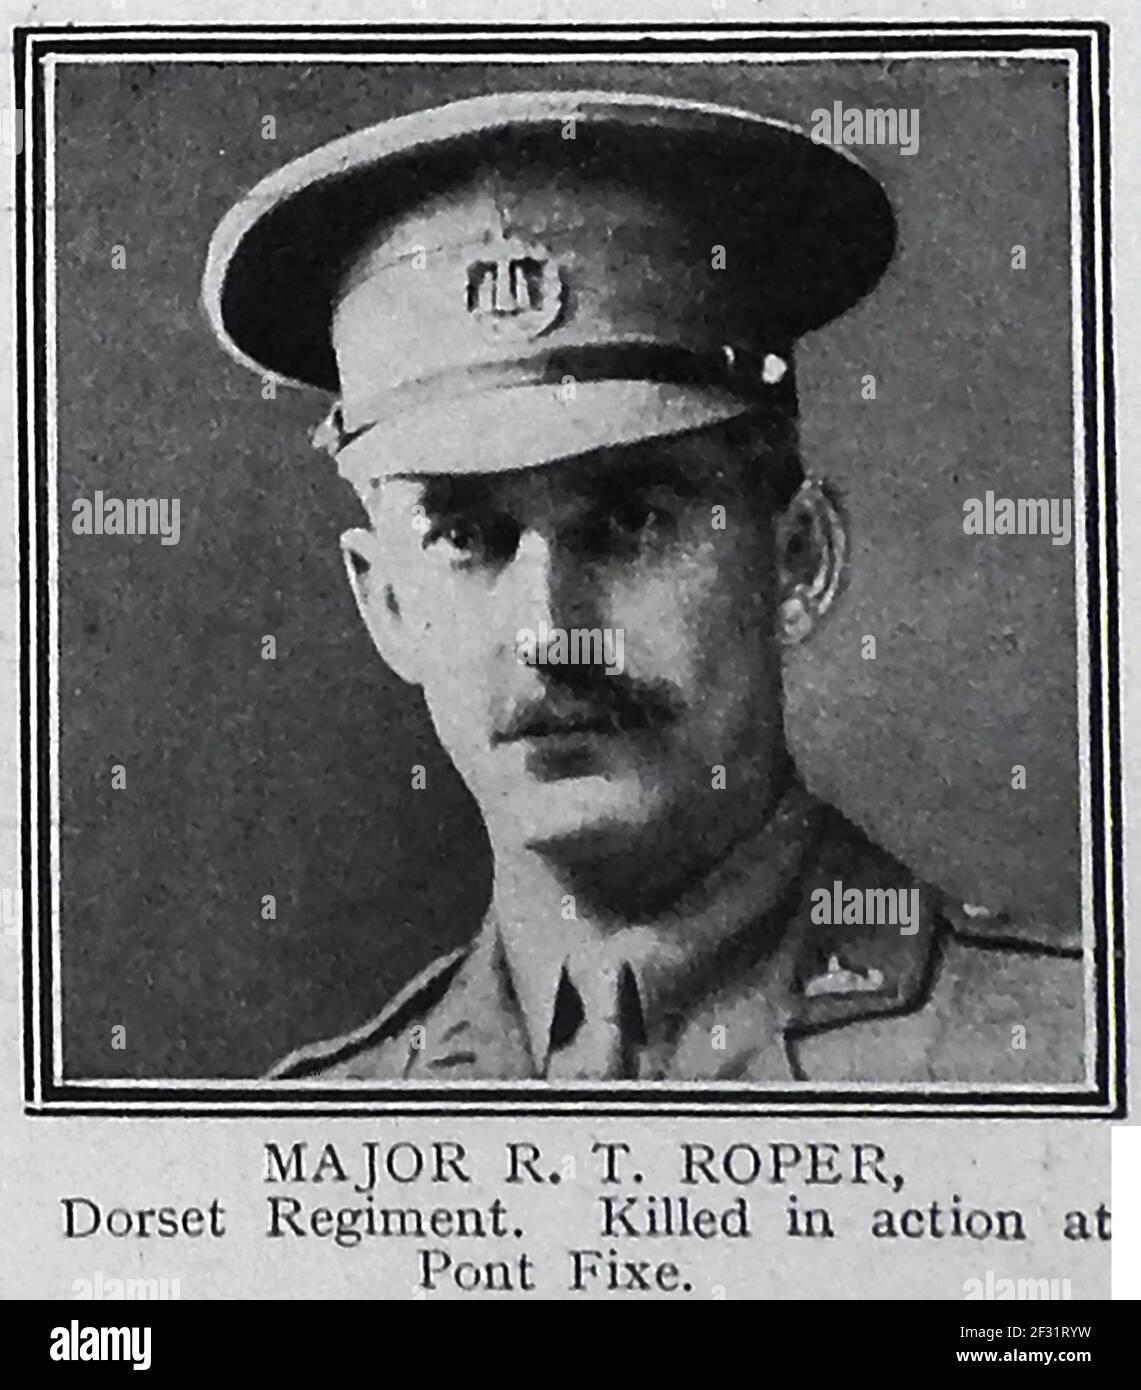 MAJOR R T ROPER del reggimento Dorset che è stato ucciso in azione a Pont Fixe - un ritratto stampato da una pagina di 1914-1915 ruolo di onore di coloro che sono stati uccisi in azione nella prima guerra mondiale. Foto Stock